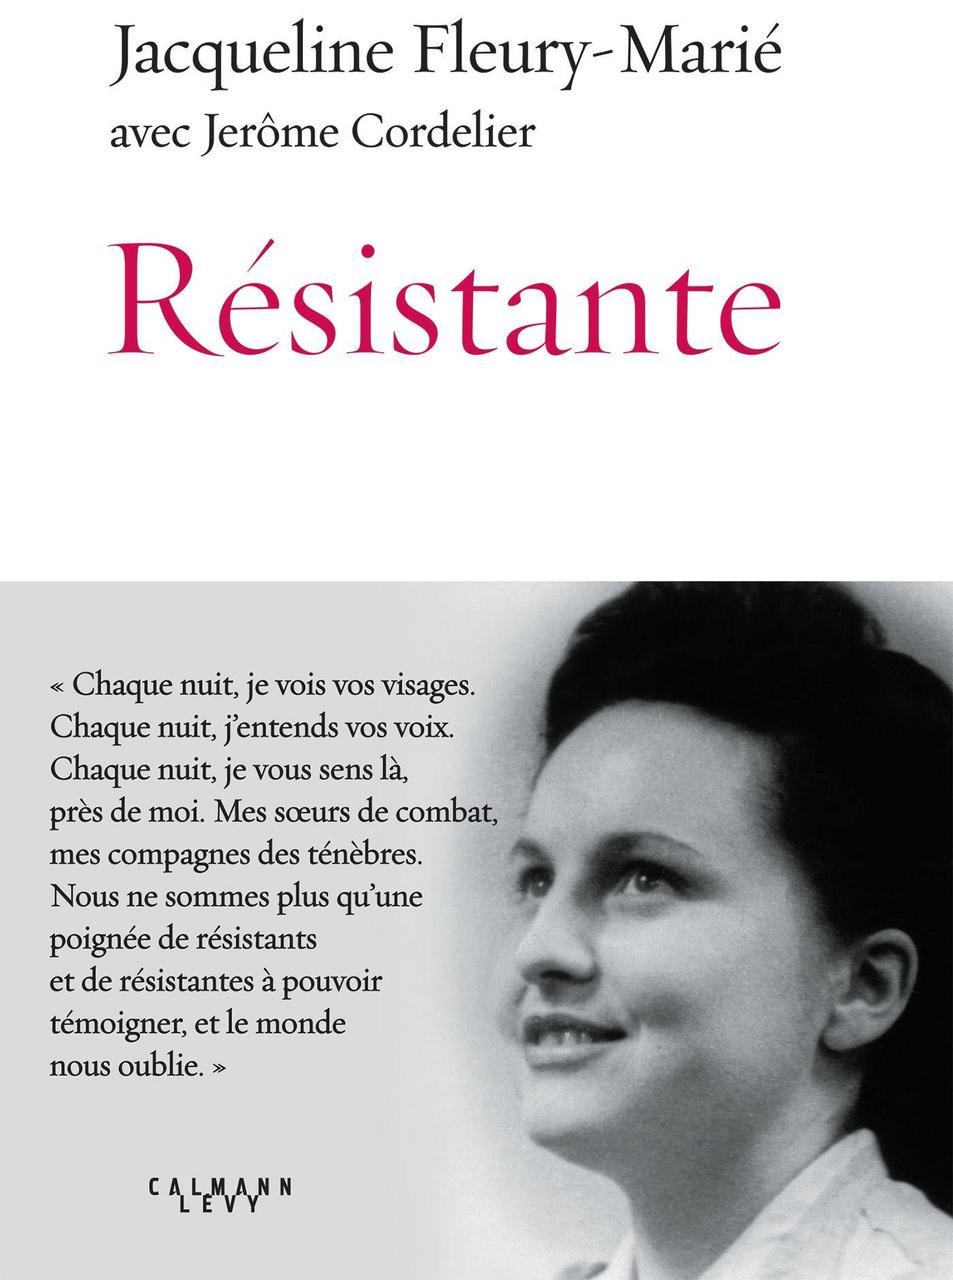 Yvelines : Jacqueline Fleury-Marié, la Résistance dans la peau - Le Parisien